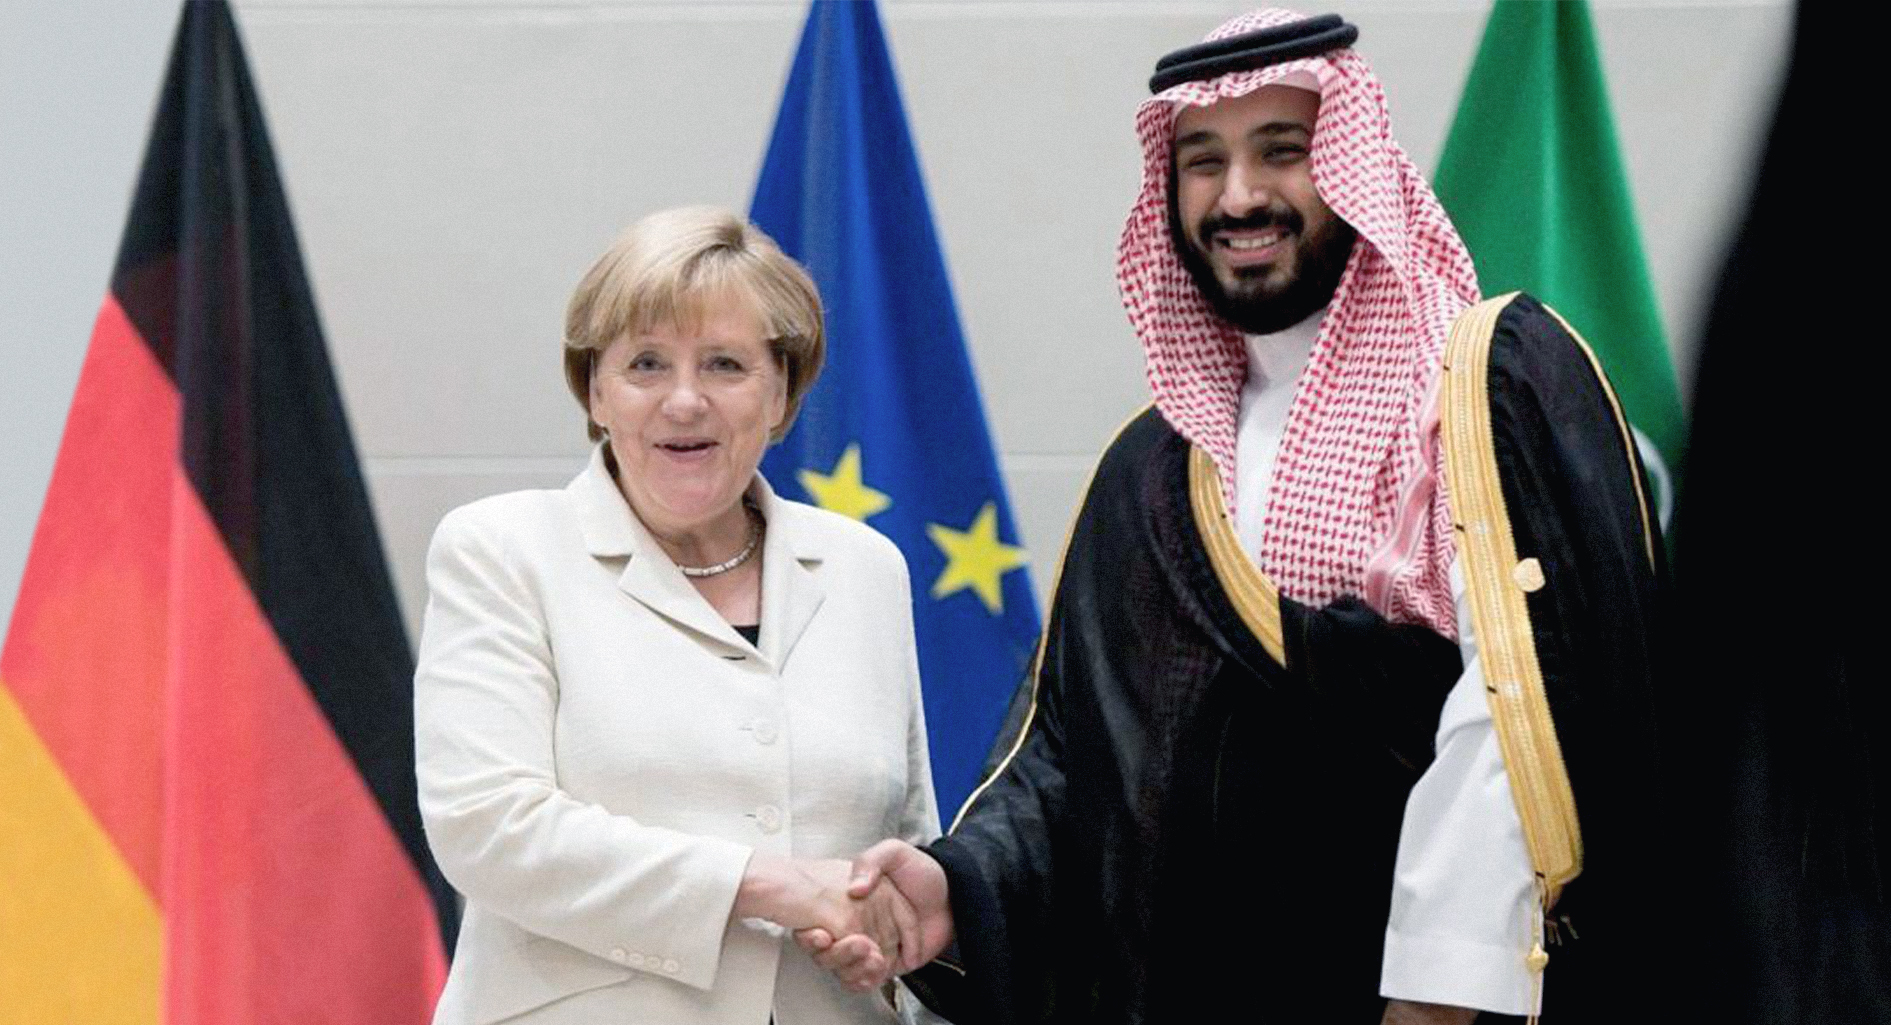 صورة وسوسة الشيطان و ثلاثة أسباب أخرى تمنع ألمانيا من التوقف عن بيع أسلحة للتحالف العربي